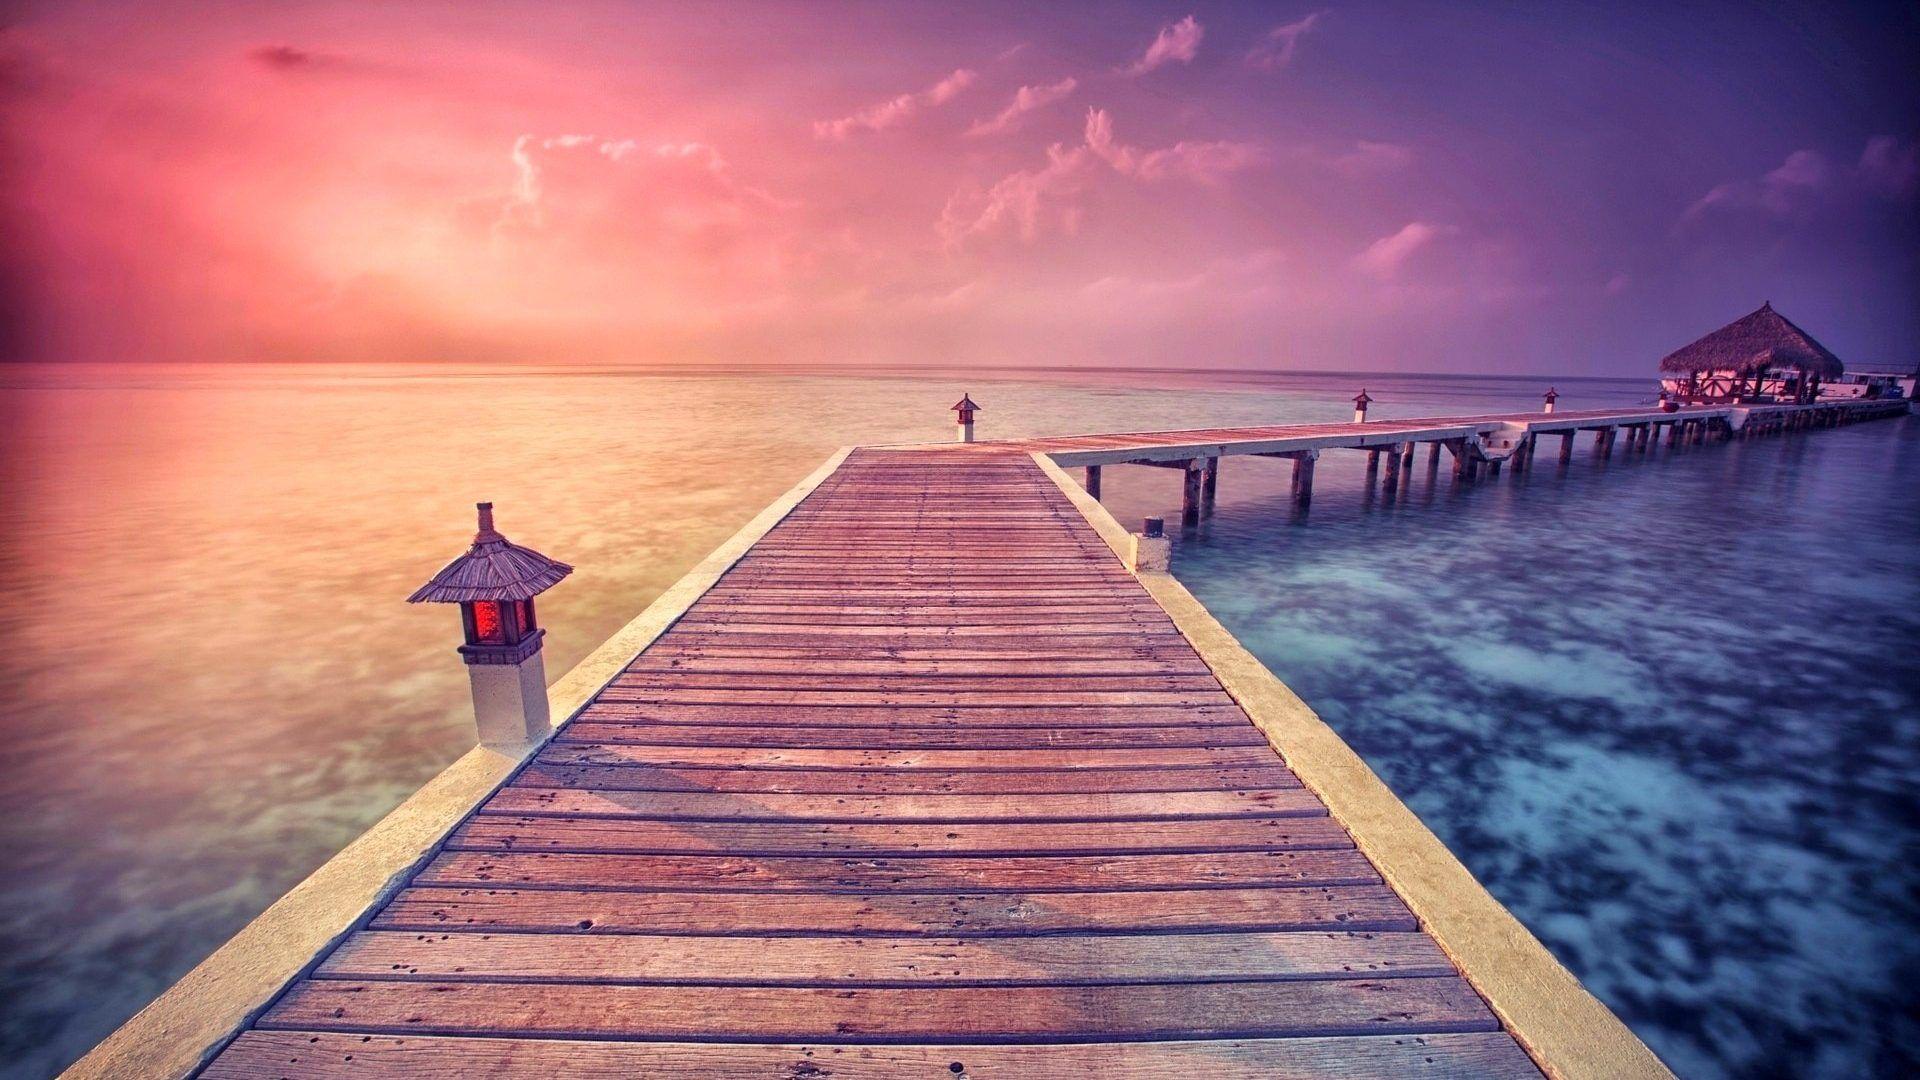 Pink Ocean Desktop Wallpapers - Top Free Pink Ocean Desktop Backgrounds